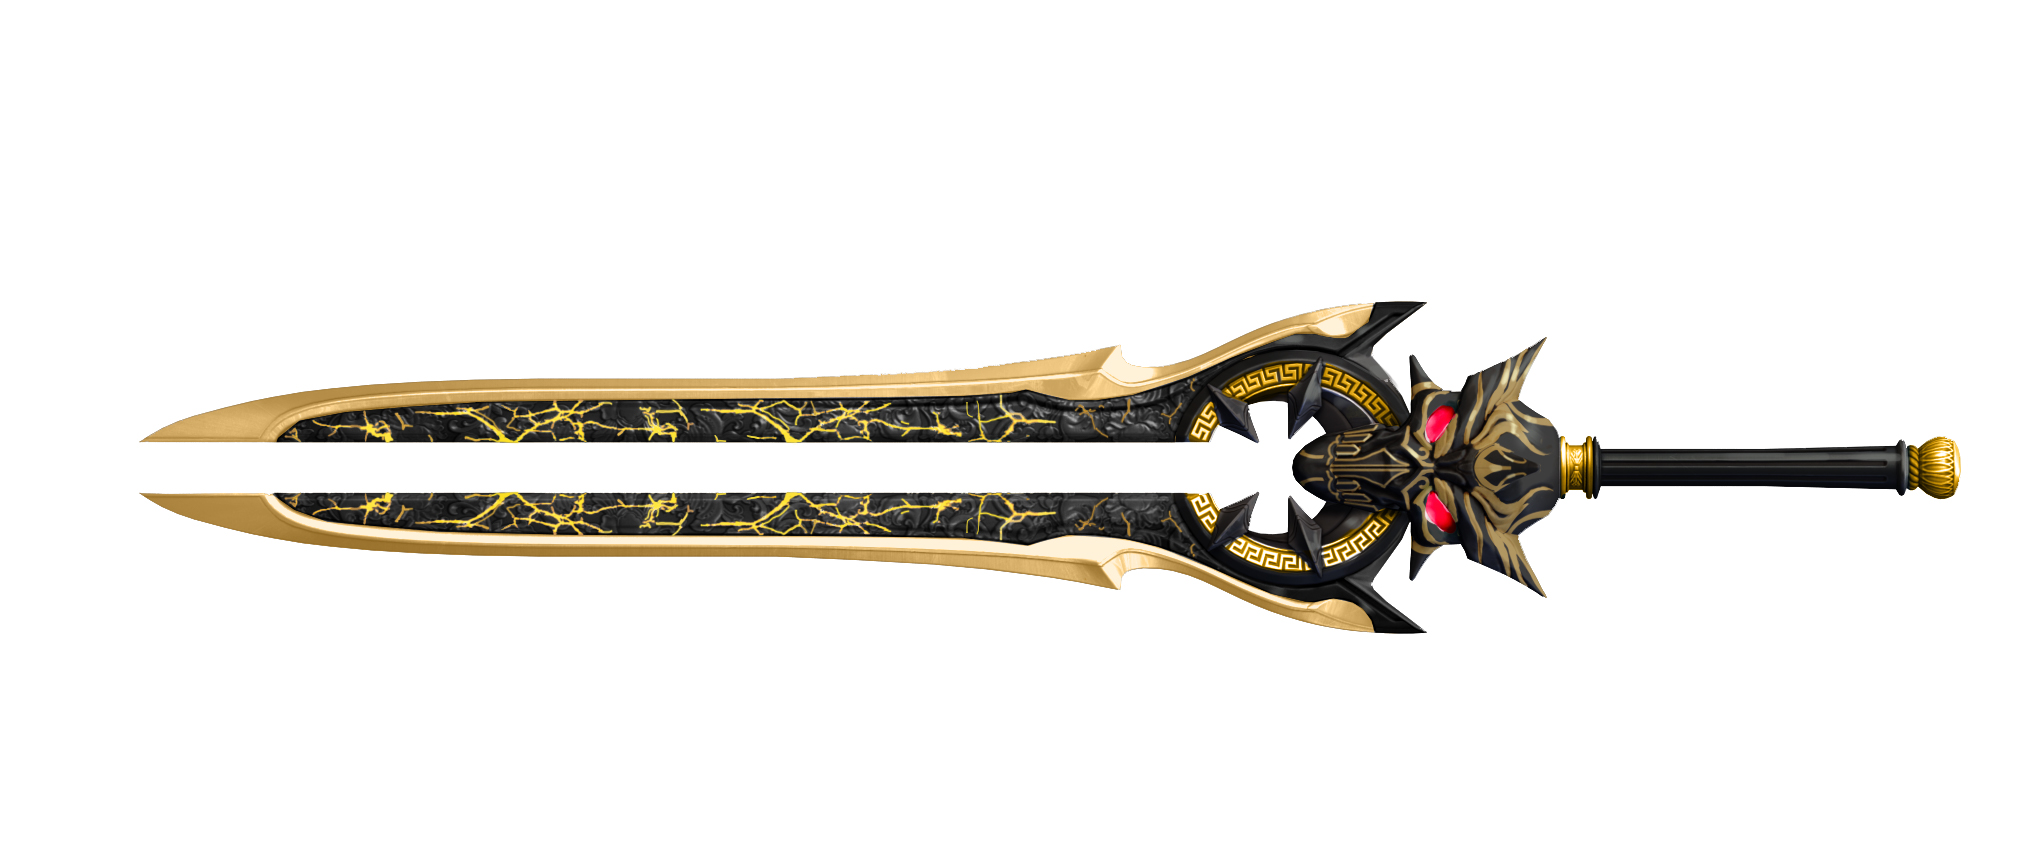 作为冥界之王哈迪斯的至宝,冥王剑一推出就迅速制霸逆战刀战模式,可谓